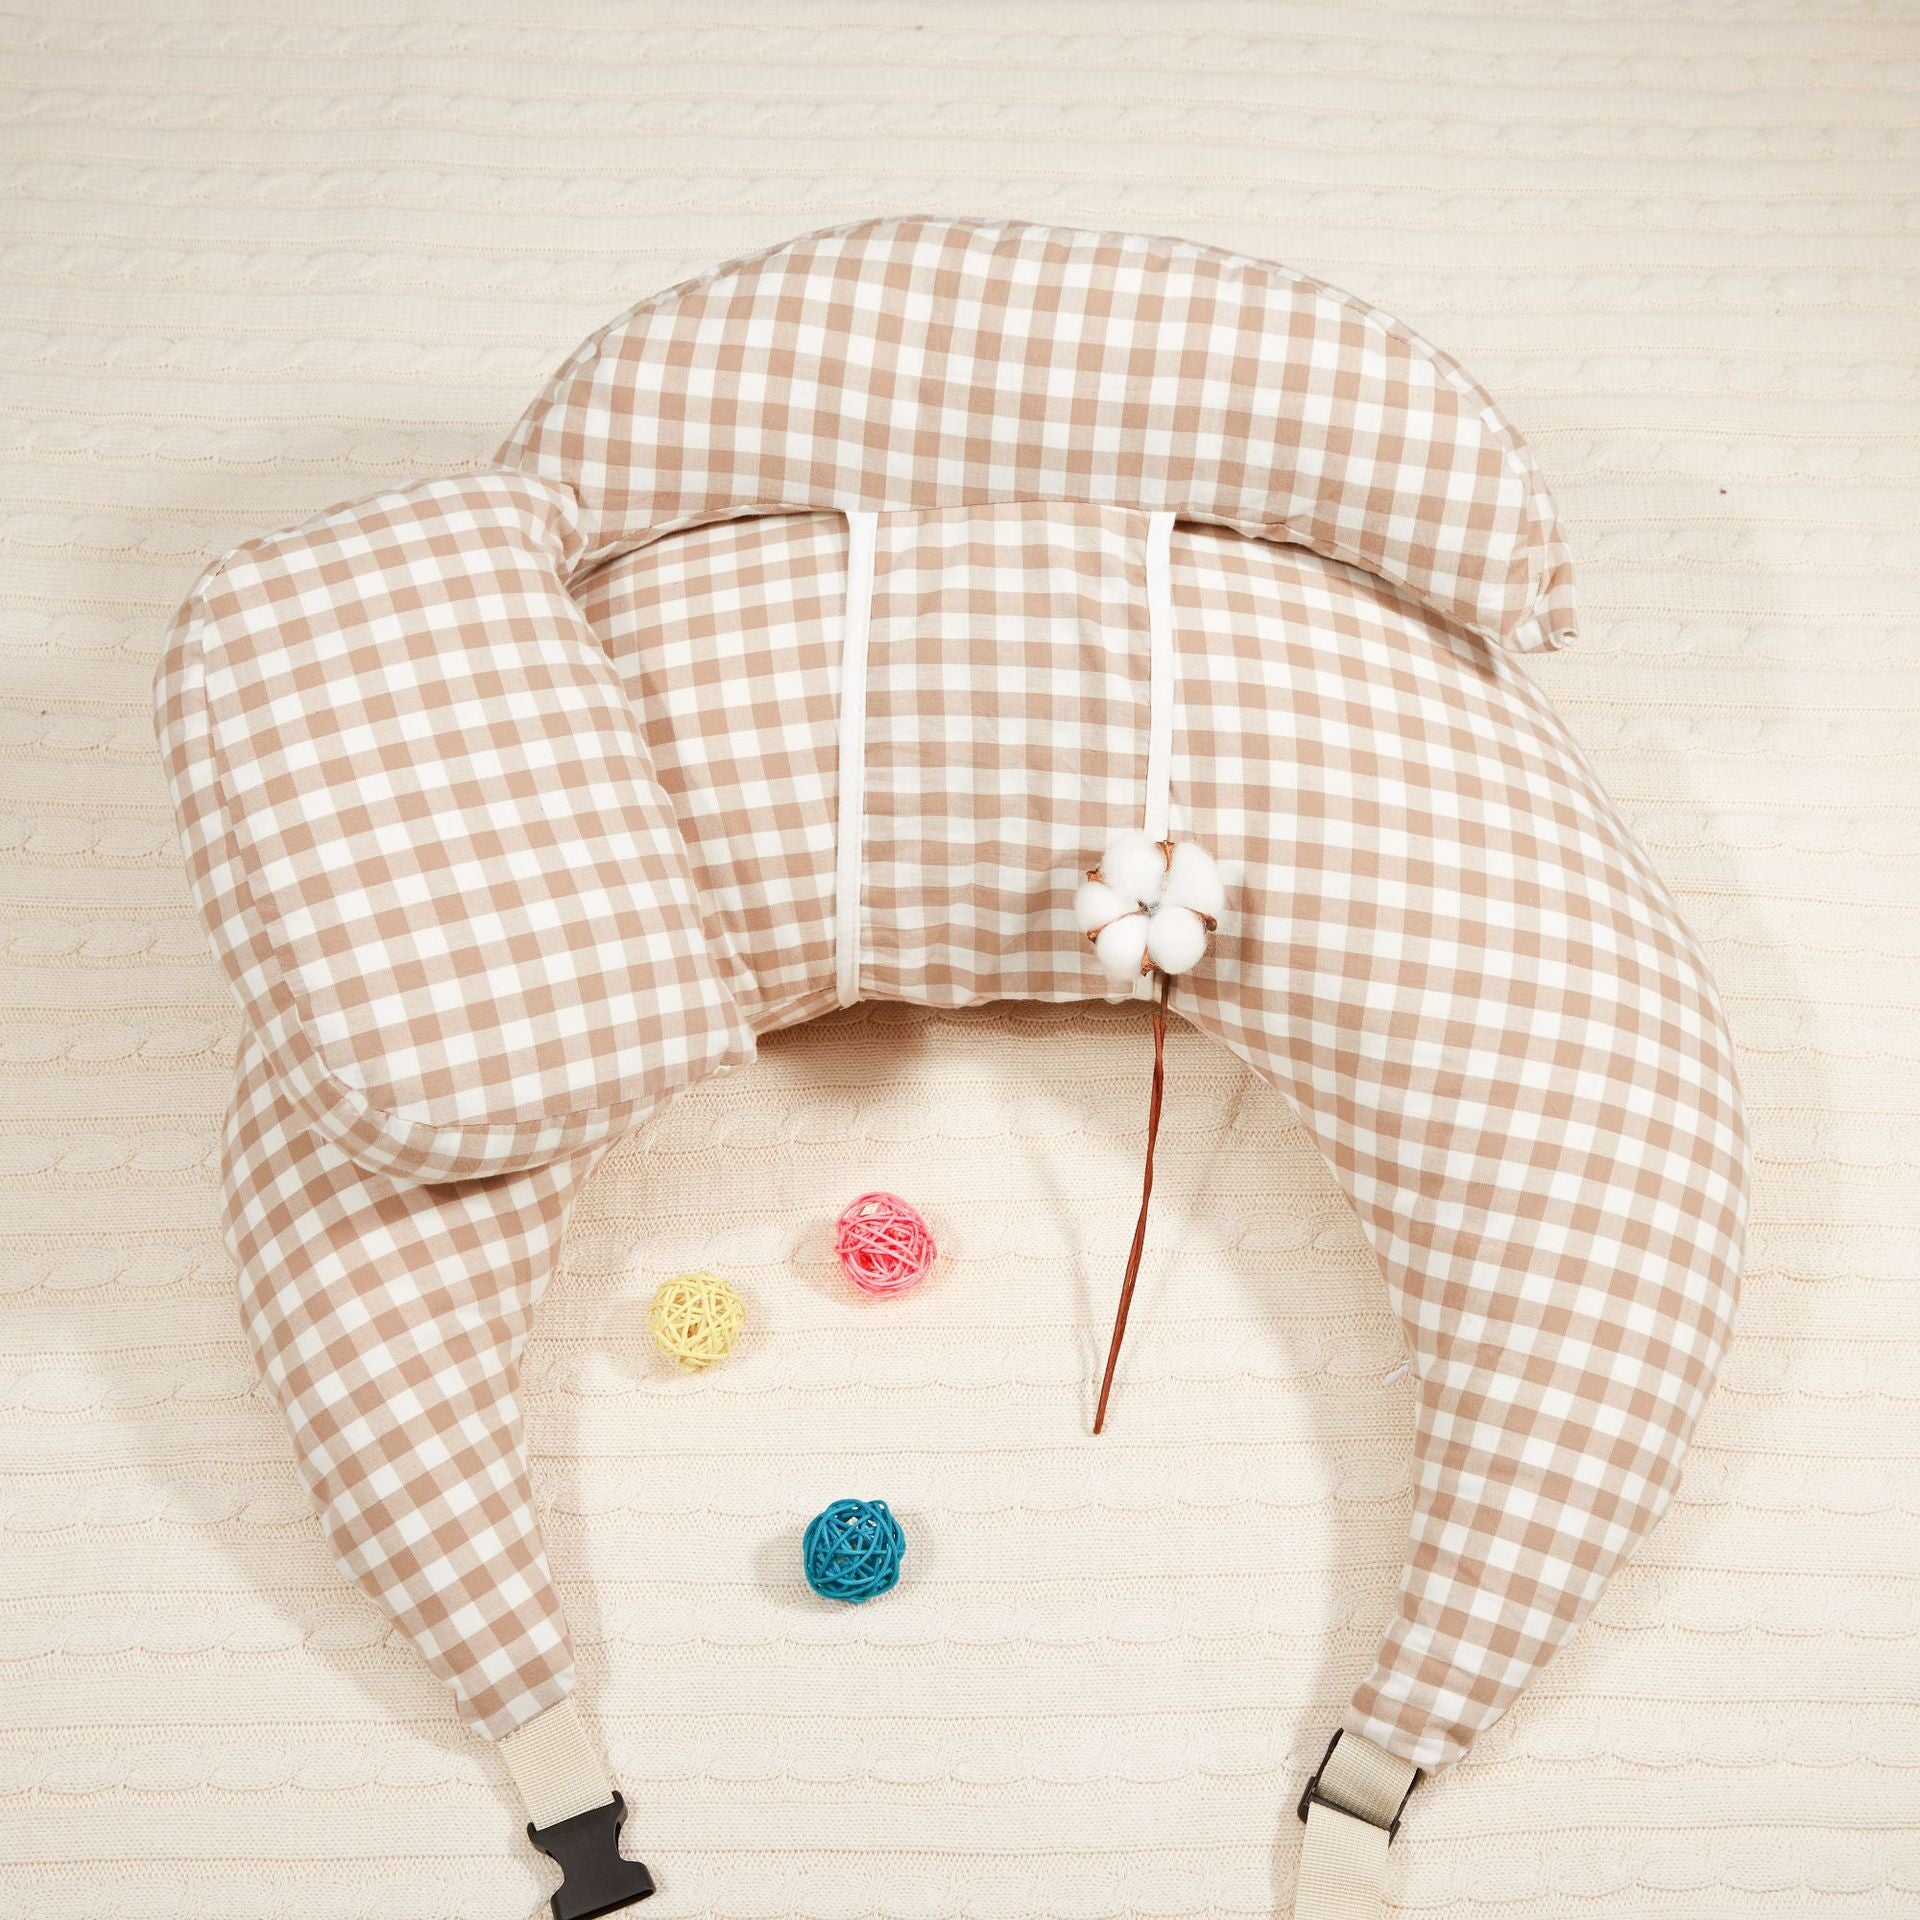 Adjustable Nursing Pillow Multifunction Baby Maternity Breastfeeding Cushion Infant Newborn Feeding Layered Washable